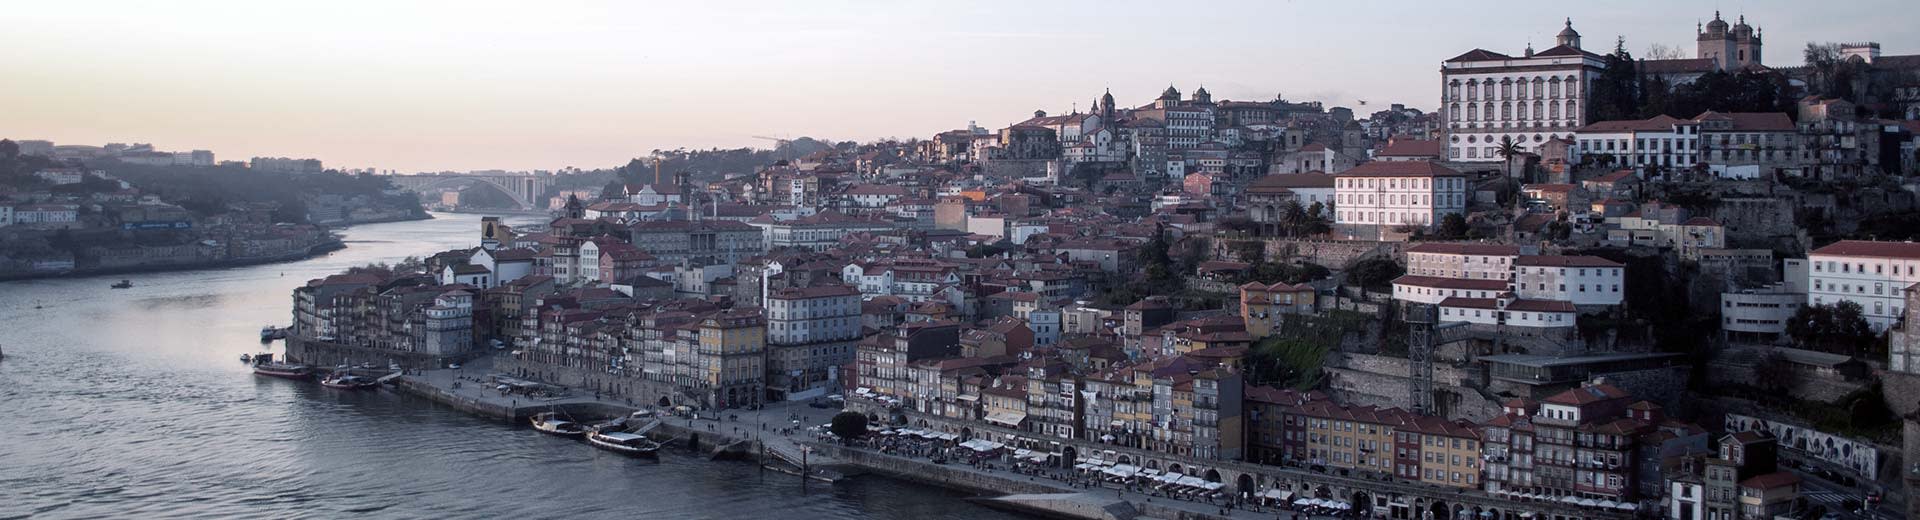 Die schöne Stadt Porto mit historischen Gebäuden an einem grauen Himmel und einem fließenden Fluss.